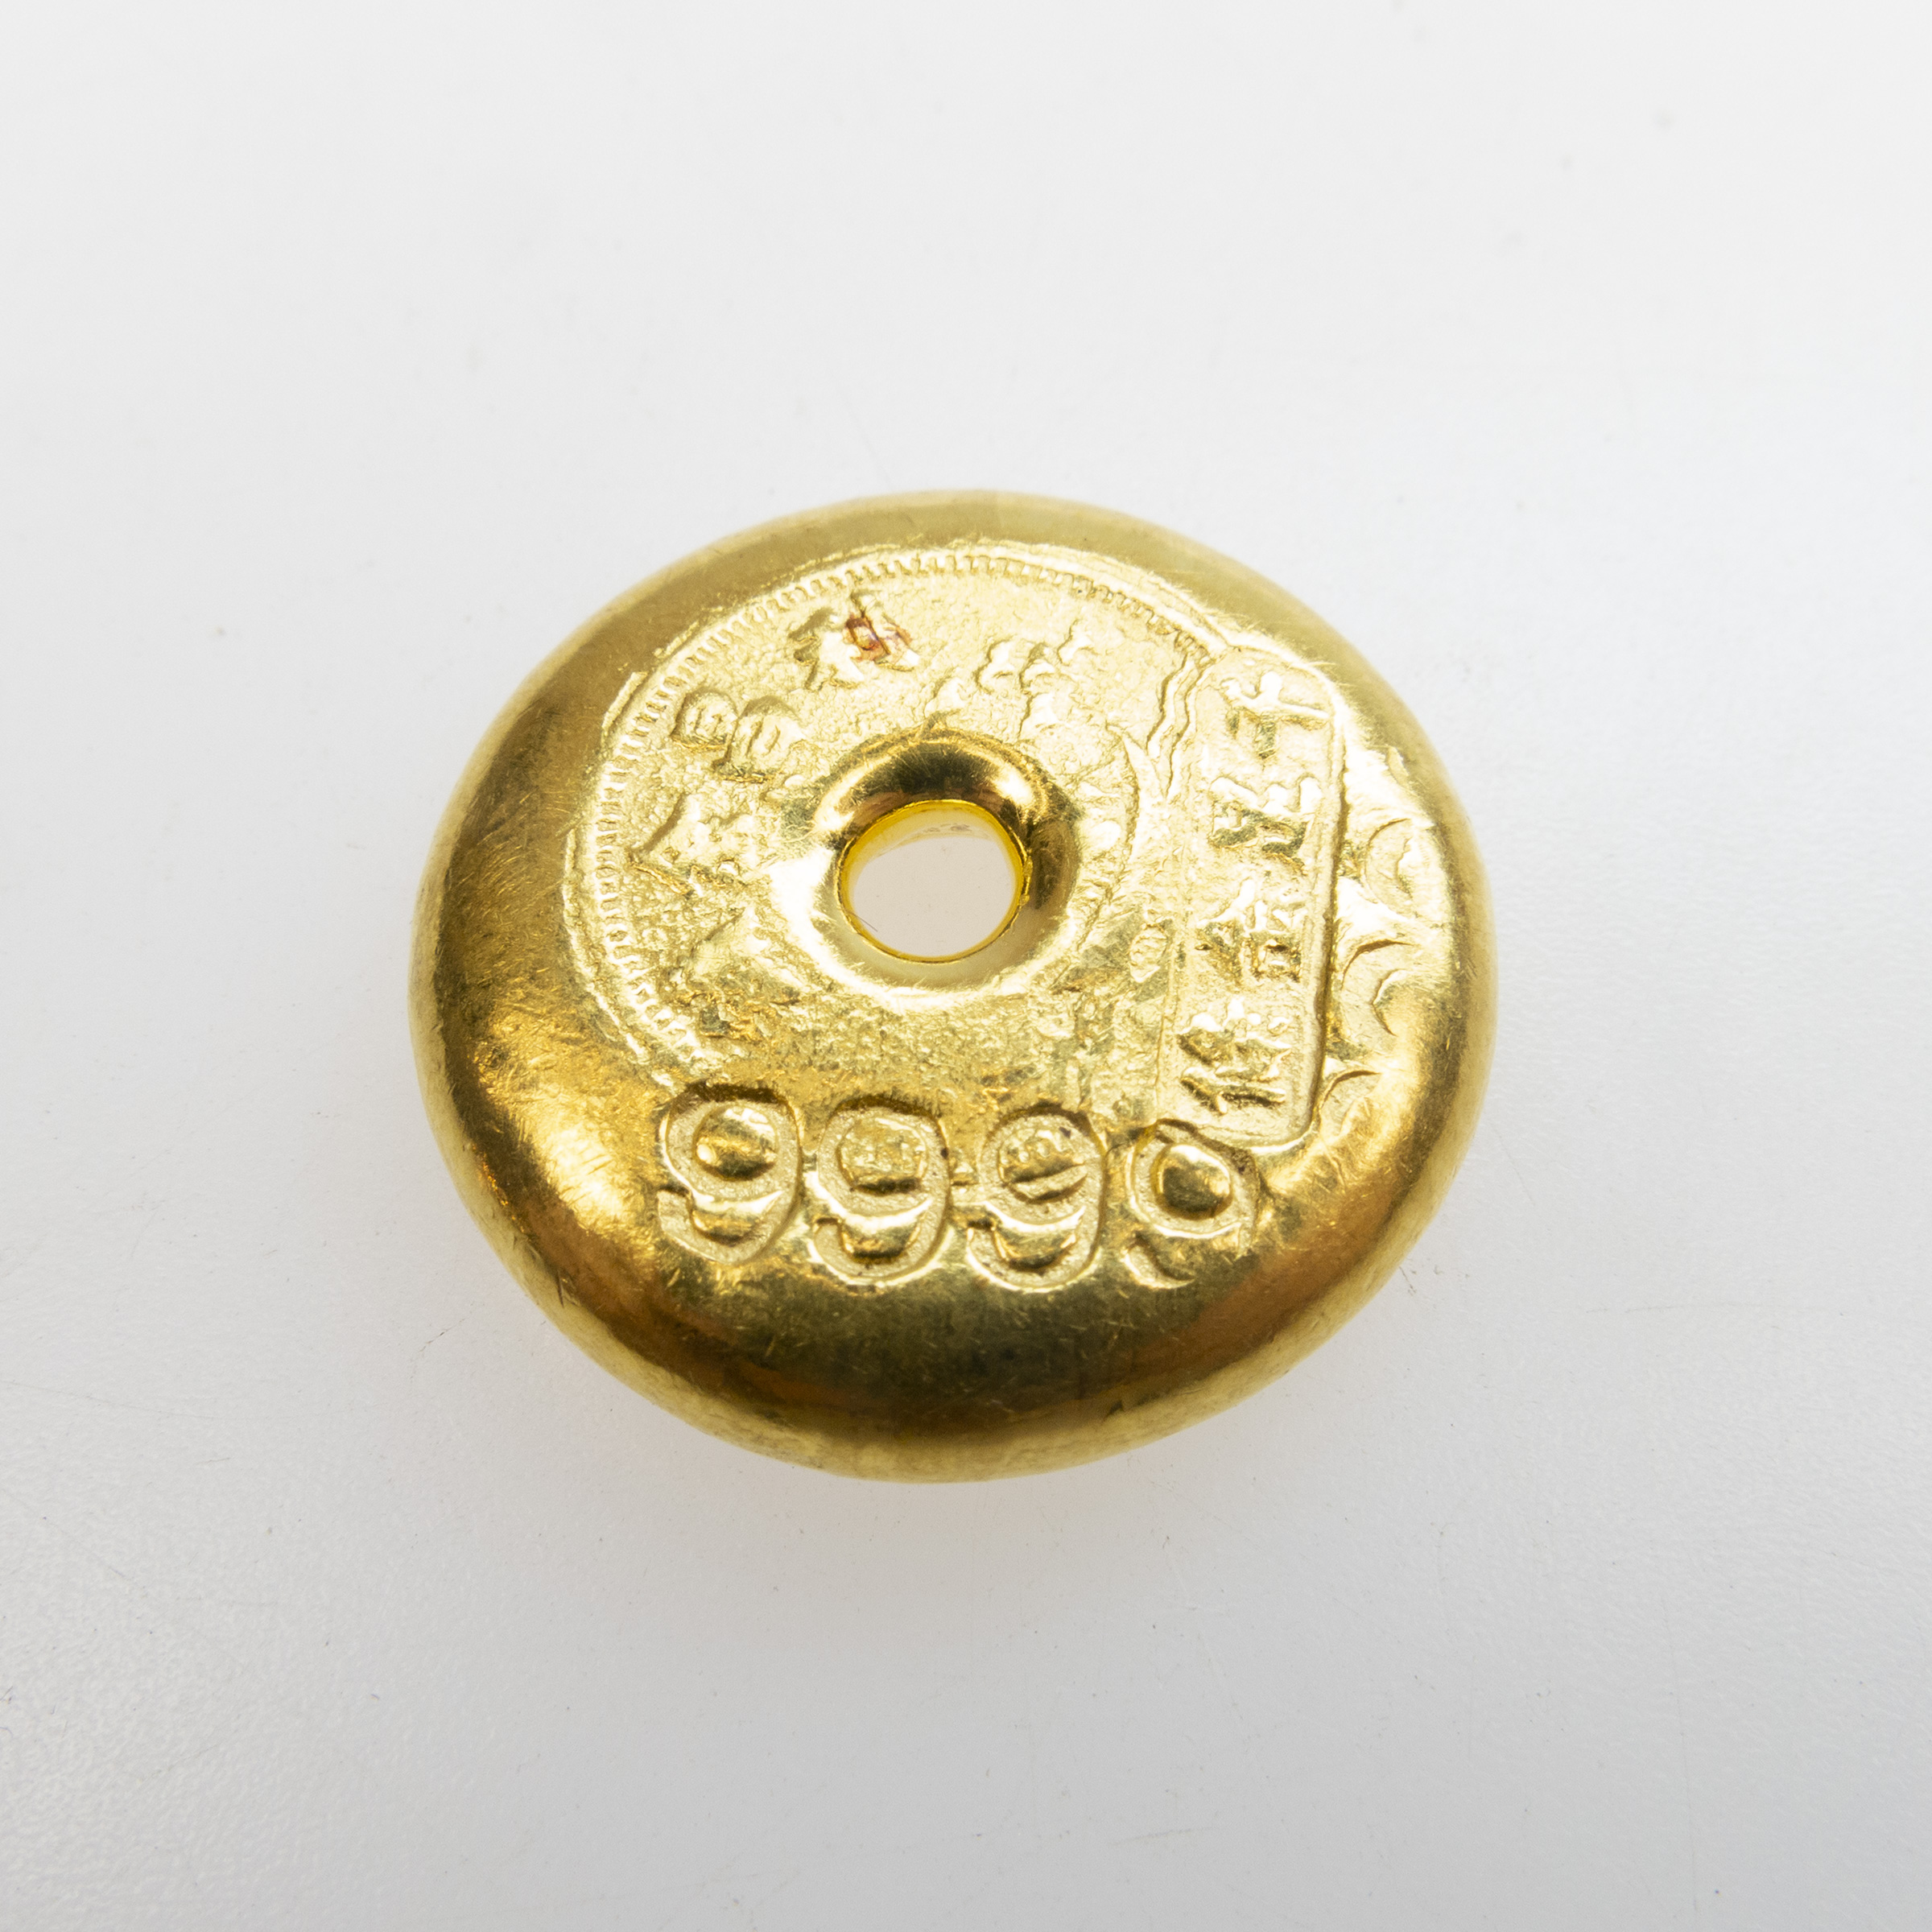 Chinese 999.9 Grade Gold Tael Ingot 